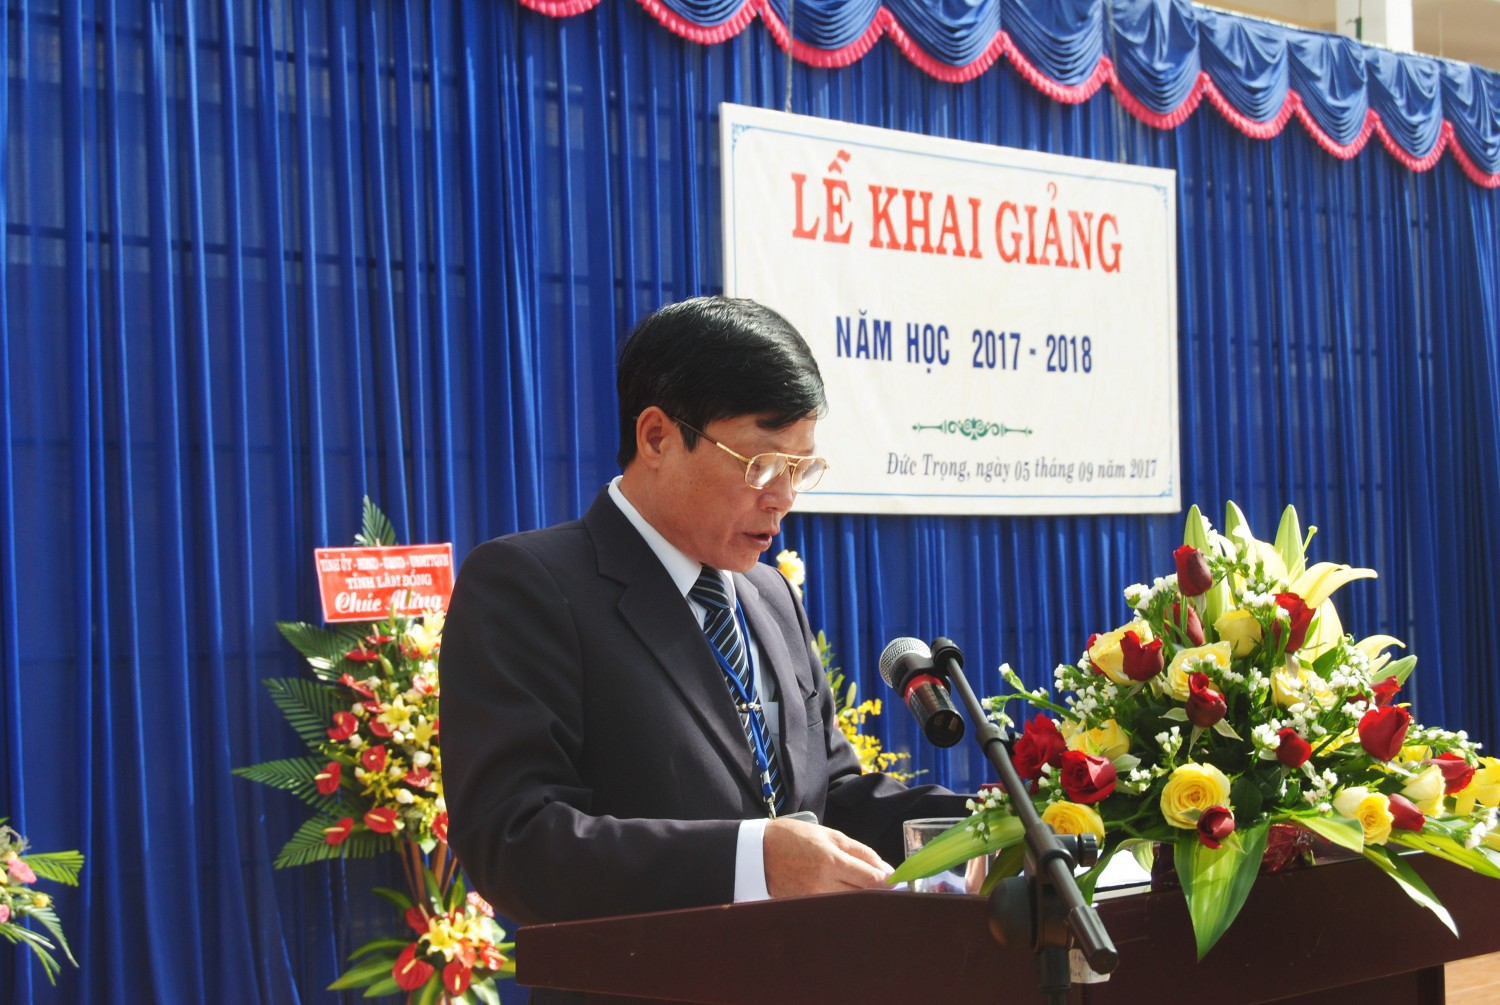 Thầy Đỗ Văn Thắng-Bí Thư Chi bộ, Hiệu trưởng nhà trường đọc diễn văn khai giảng năm học 2017-2018